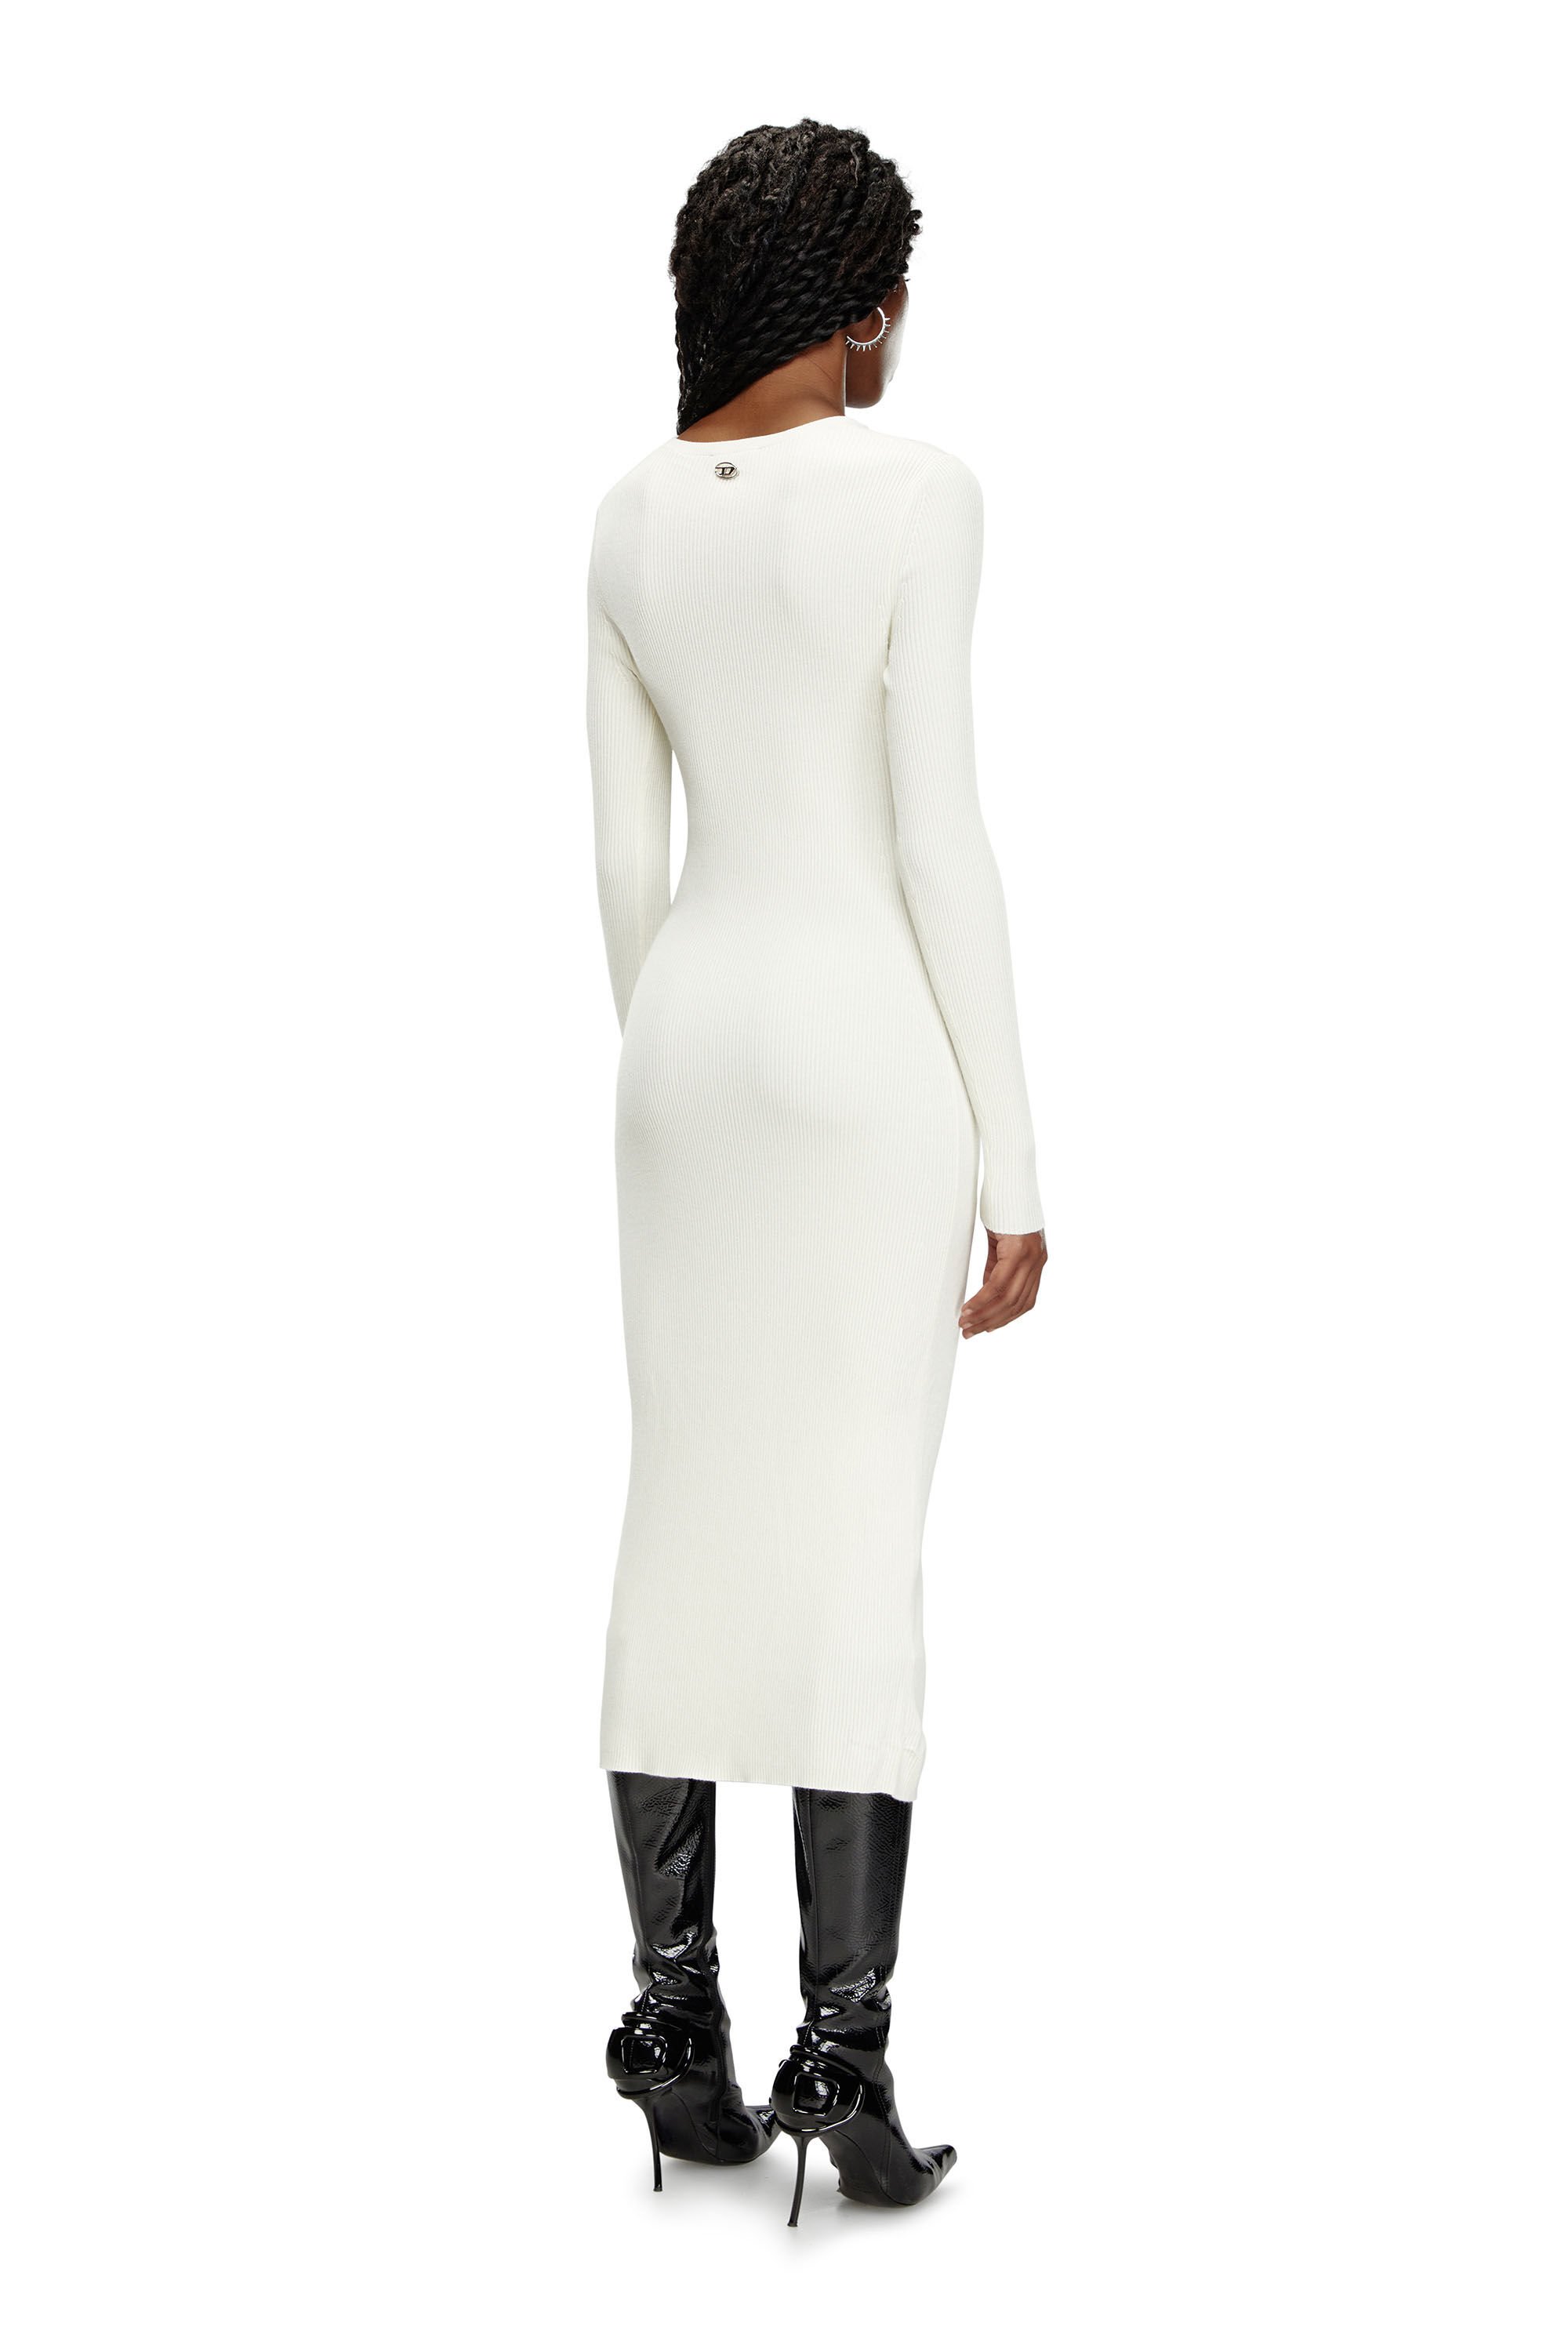 Diesel - M-PELAGOS, Mujer Vestido de mezcla de lana con recorte in Blanco - Image 3